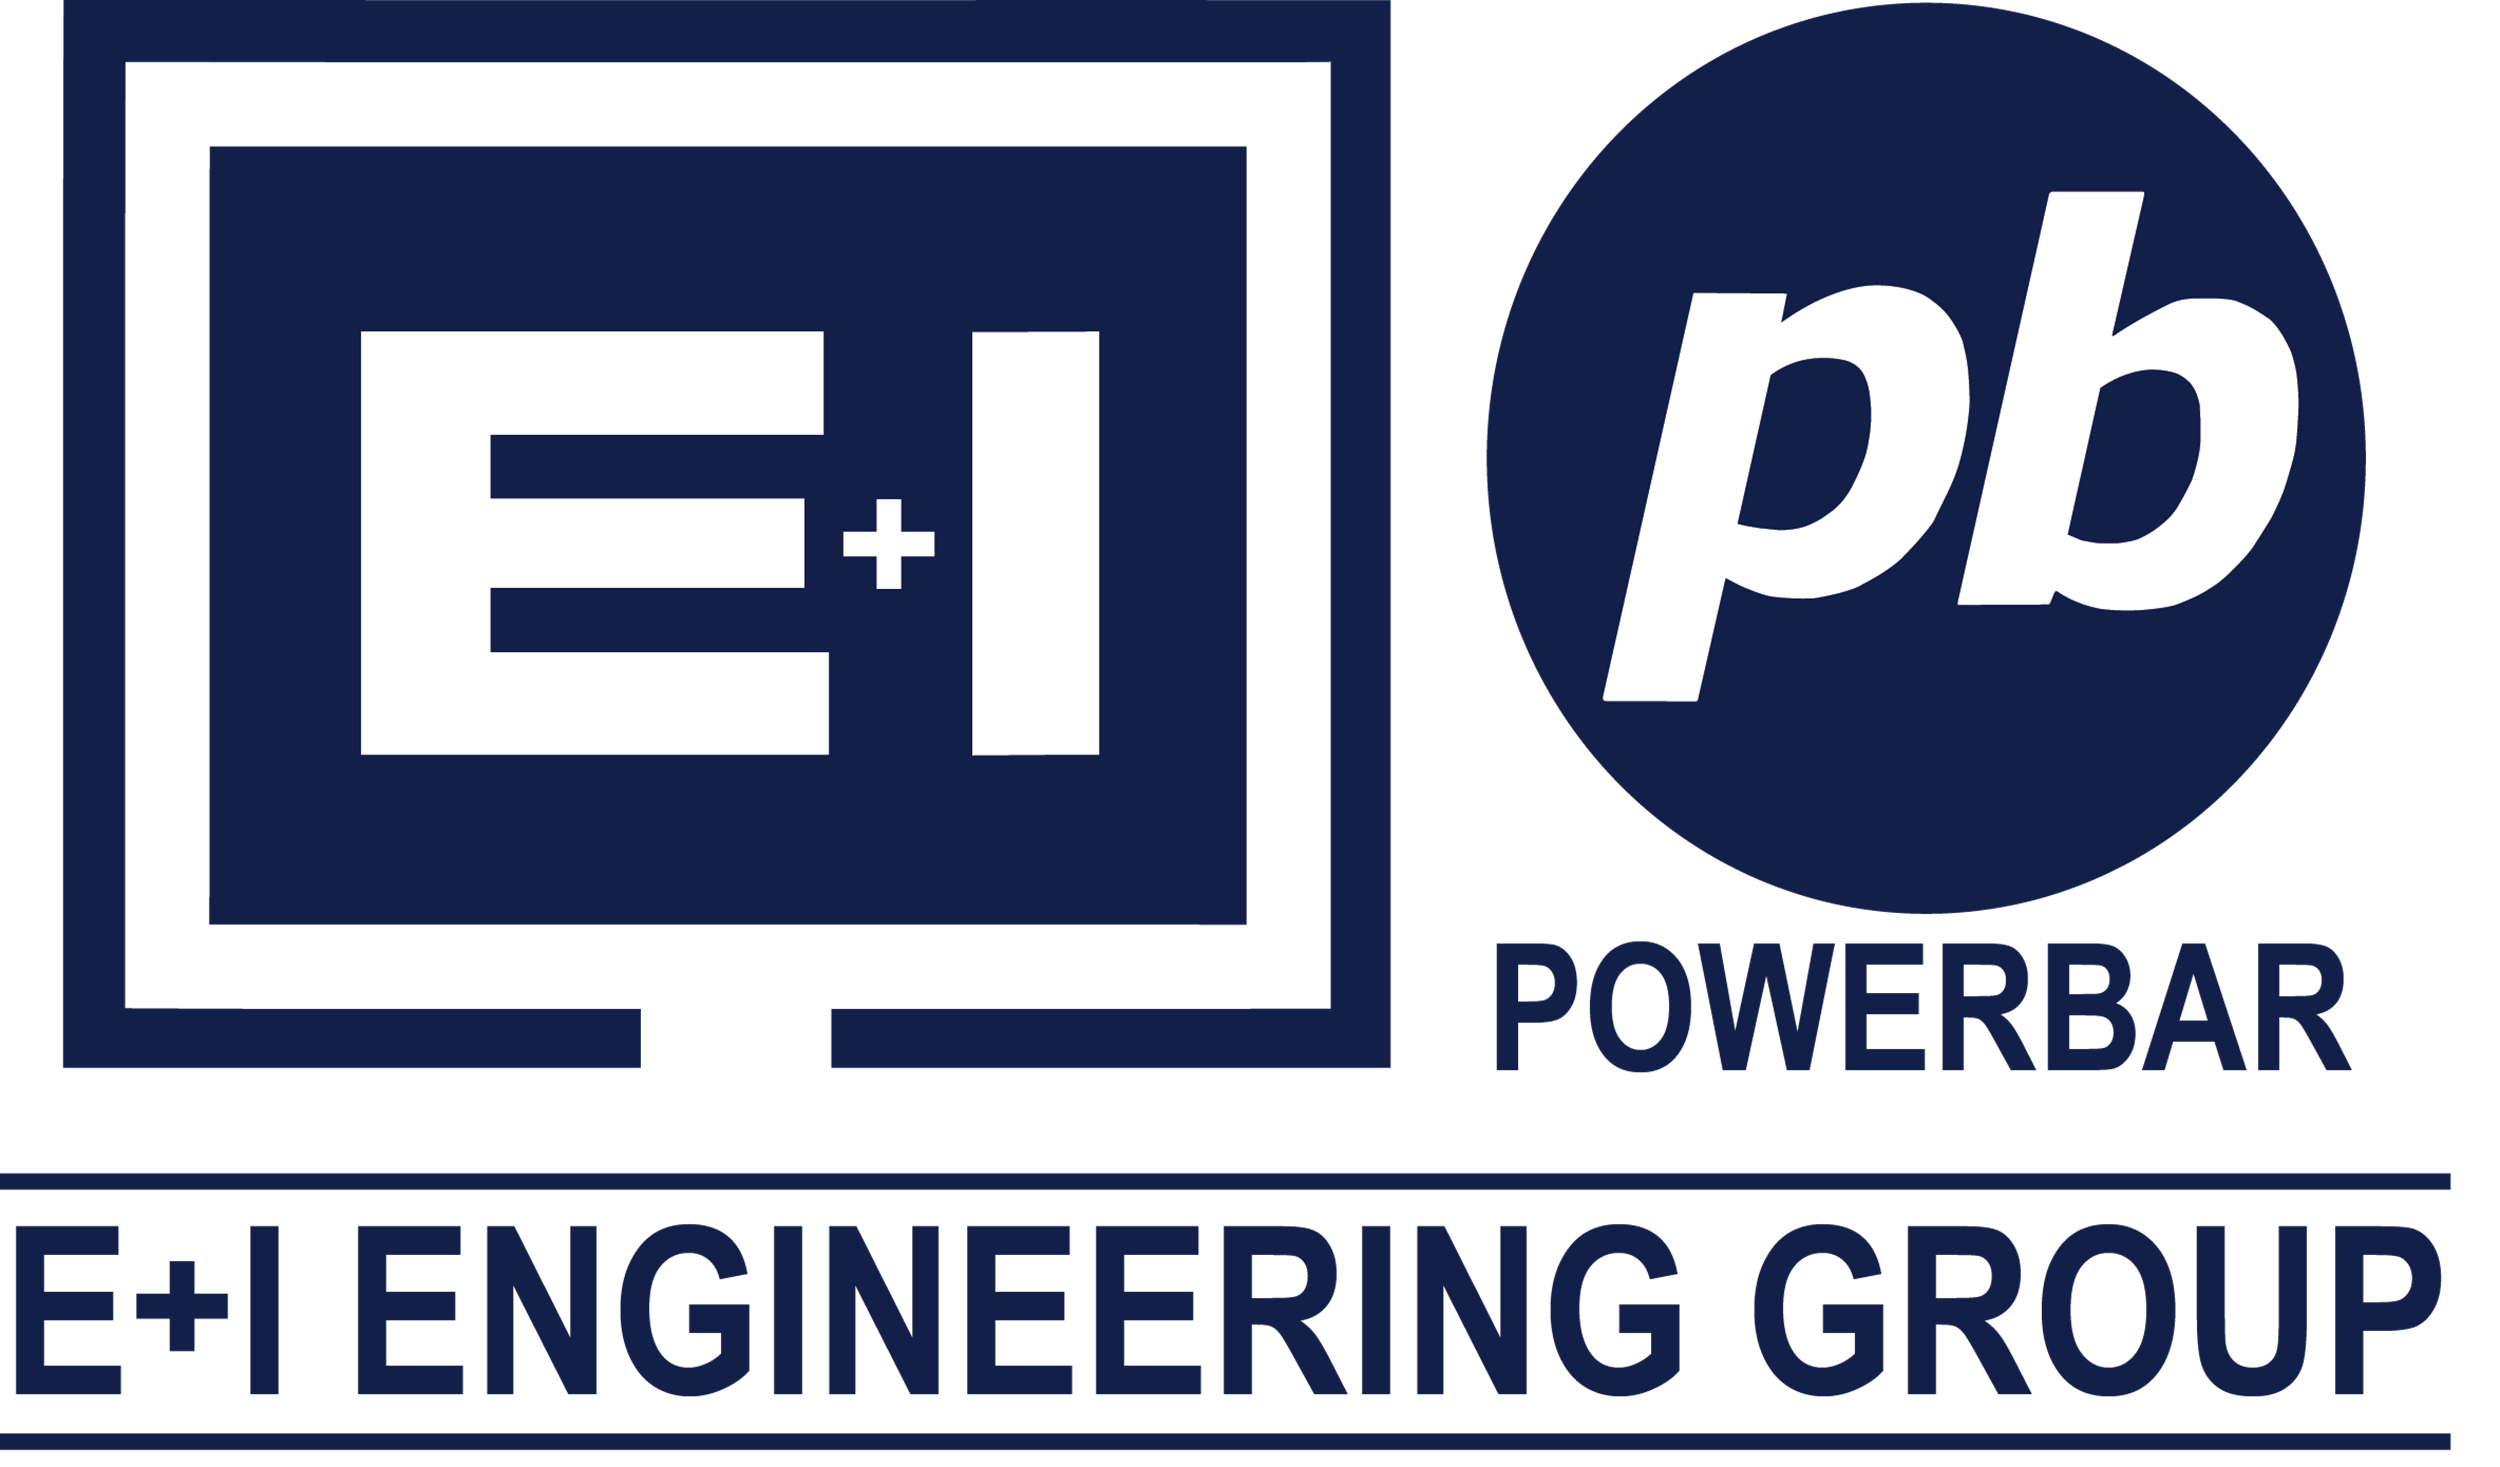 E+I Engineering Group